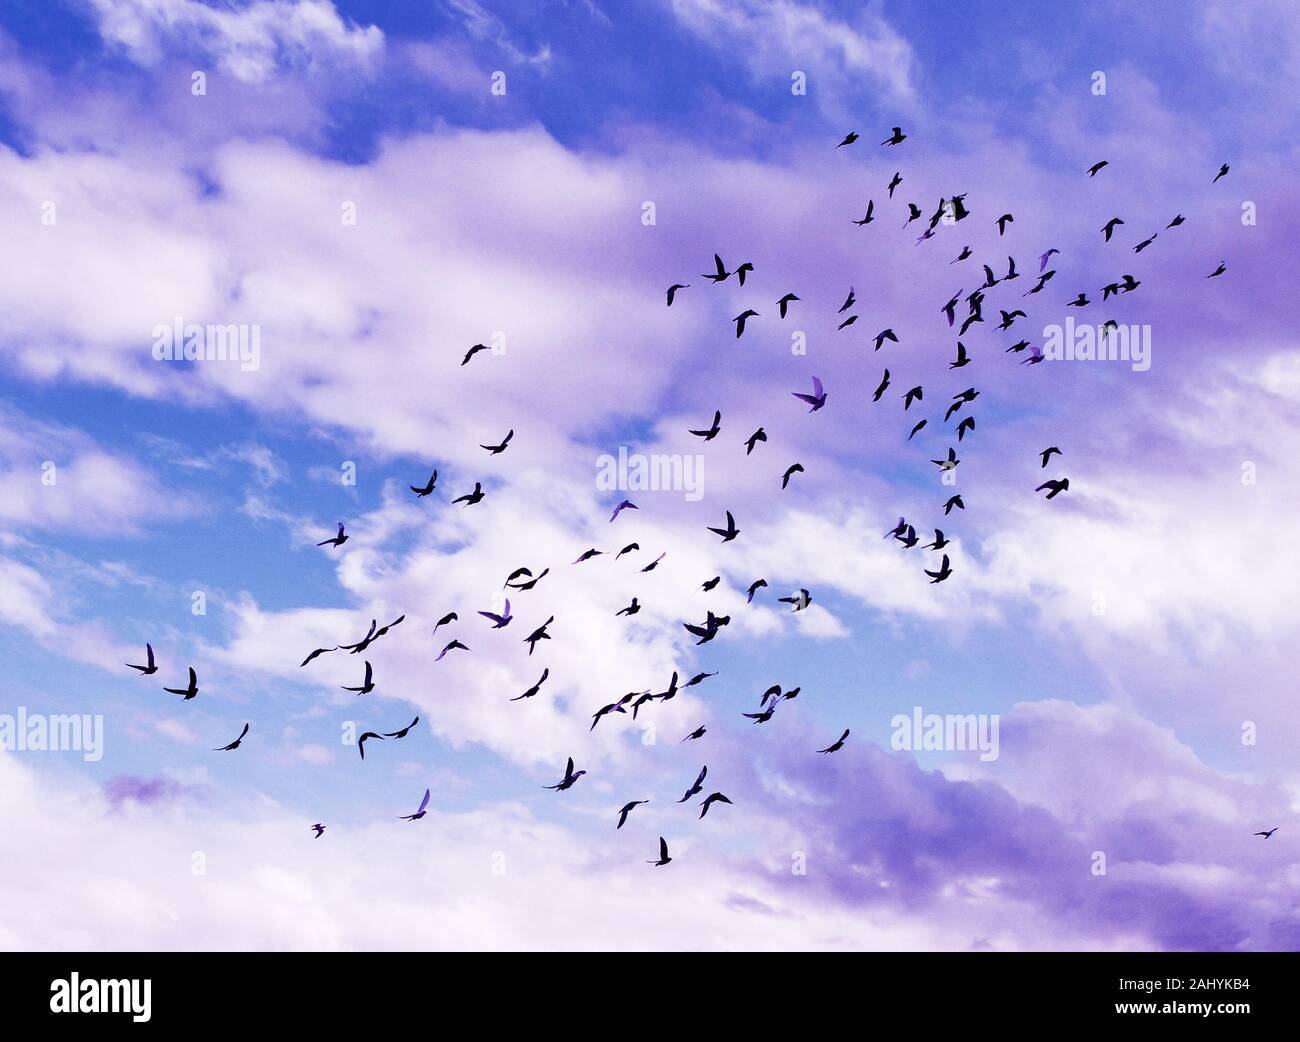 Tận hưởng cảm giác bay trên trời xanh trong bầy chim bồ câu khi chúng tung bay giữa không gian mênh mông. Vùng trời xanh sẽ đưa bạn đến những công viên và các khu vực sống động, tràn đầy của các loài chim từ khắp nơi trên thế giới.